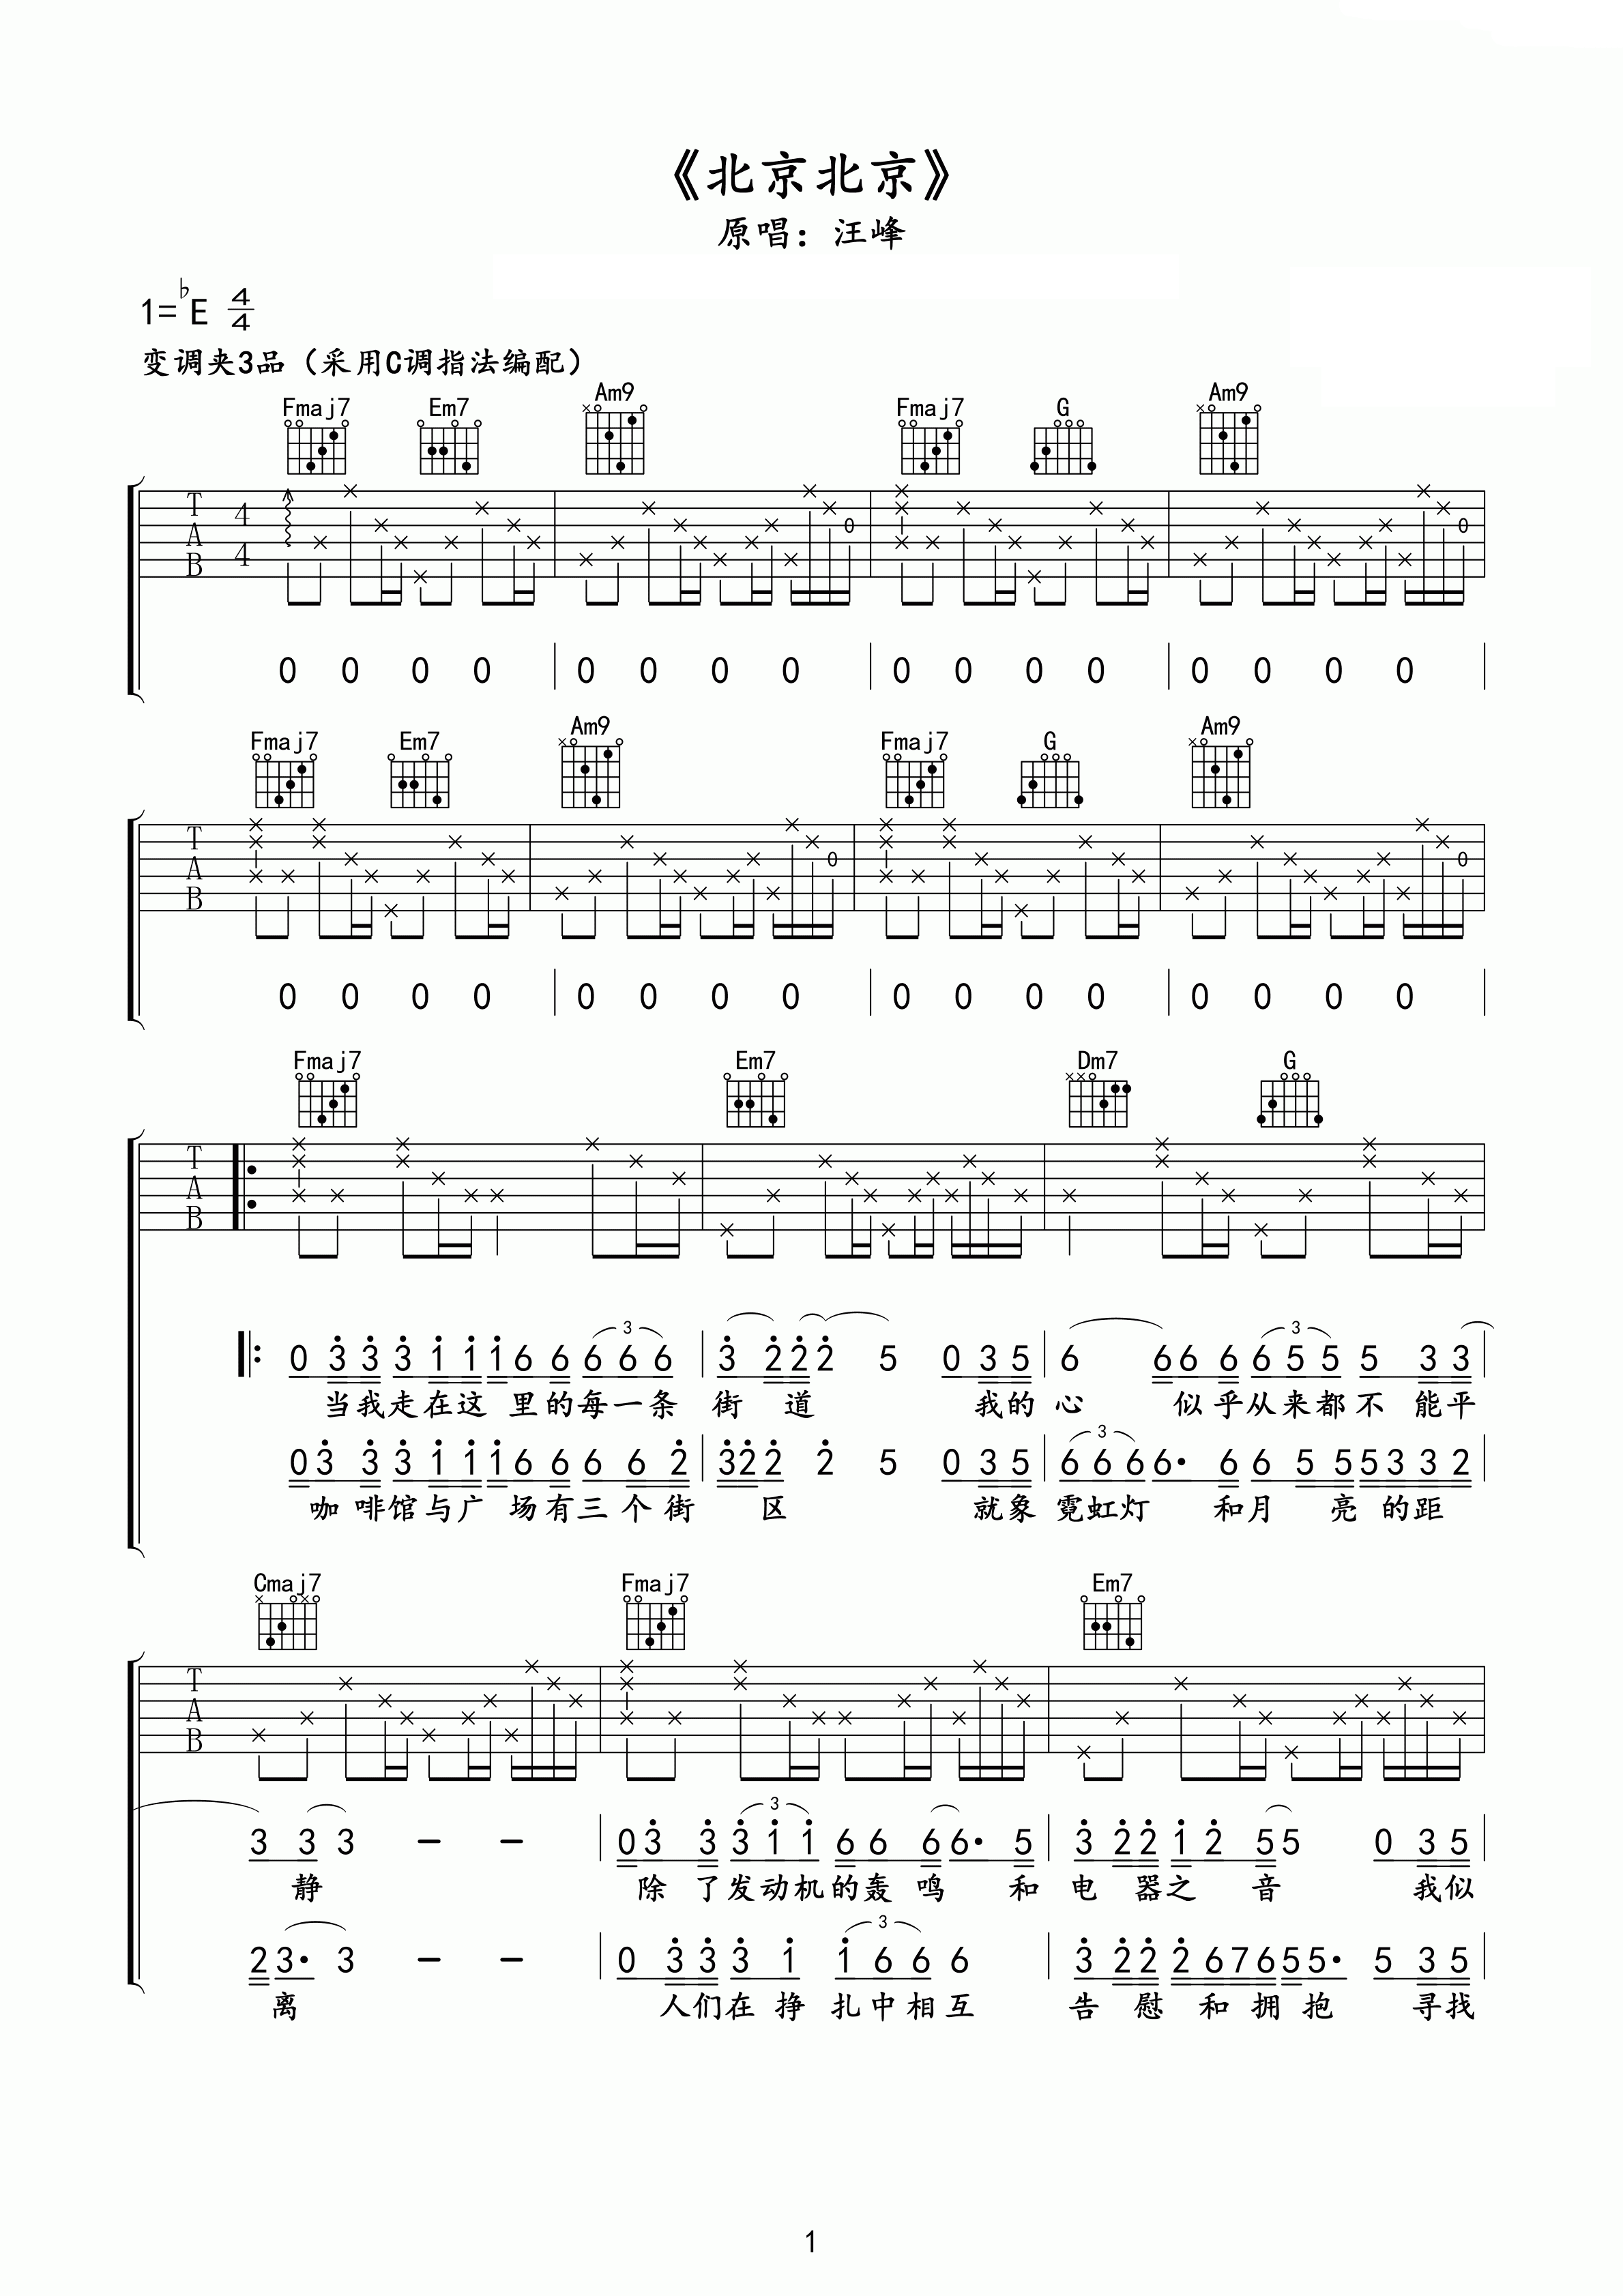 汪峰 - 光明 [弹唱] 吉他谱